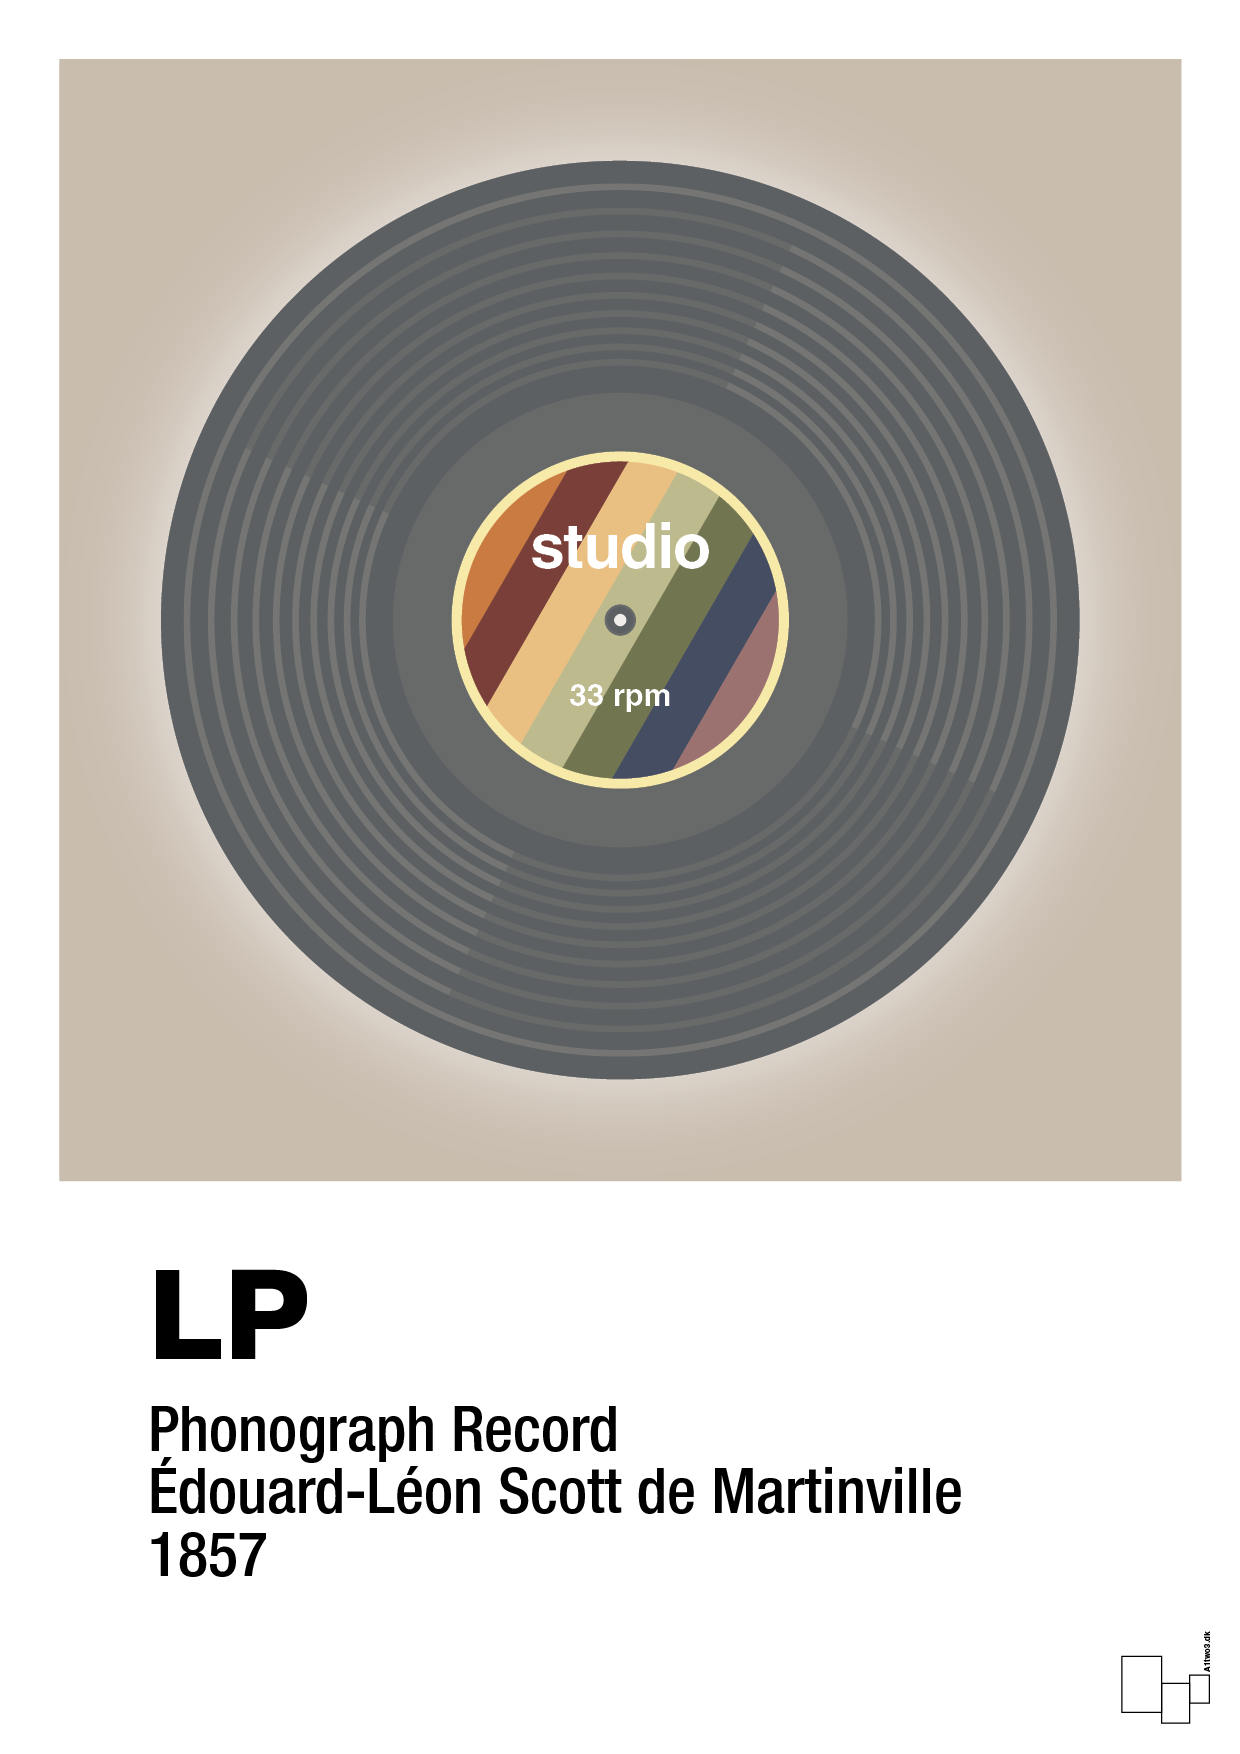 vinylplade 33rpm - Plakat med Grafik i Creamy Mushroom